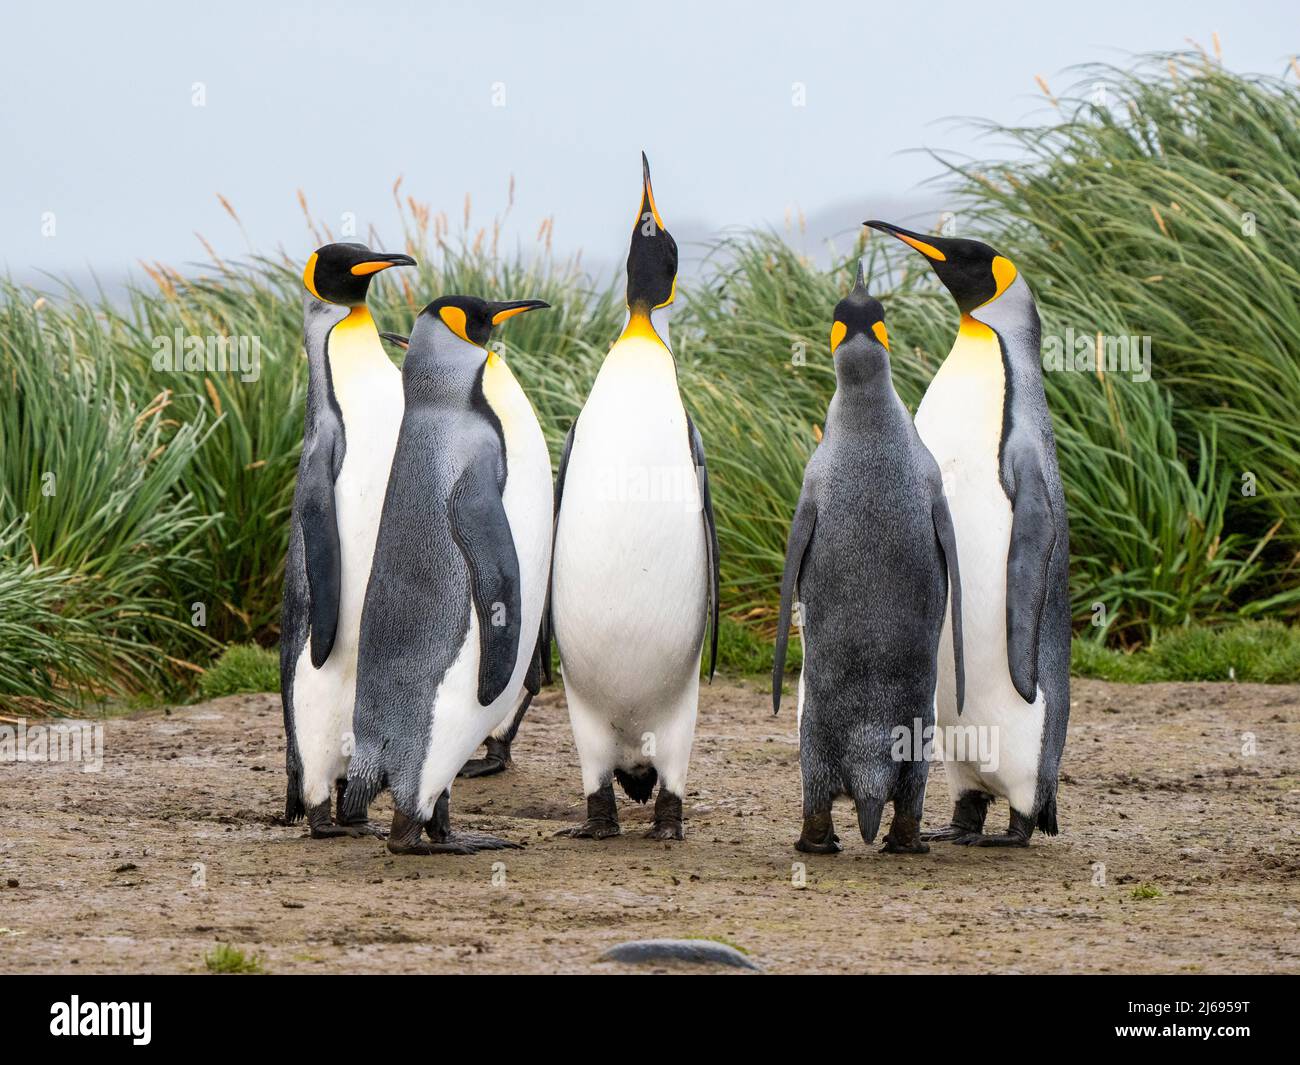 Pingouins de roi adultes (Aptenodytes patagonicus), exposés en salle d'audience dans la plaine de Salisbury, Géorgie du Sud, Atlantique Sud, régions polaires Banque D'Images